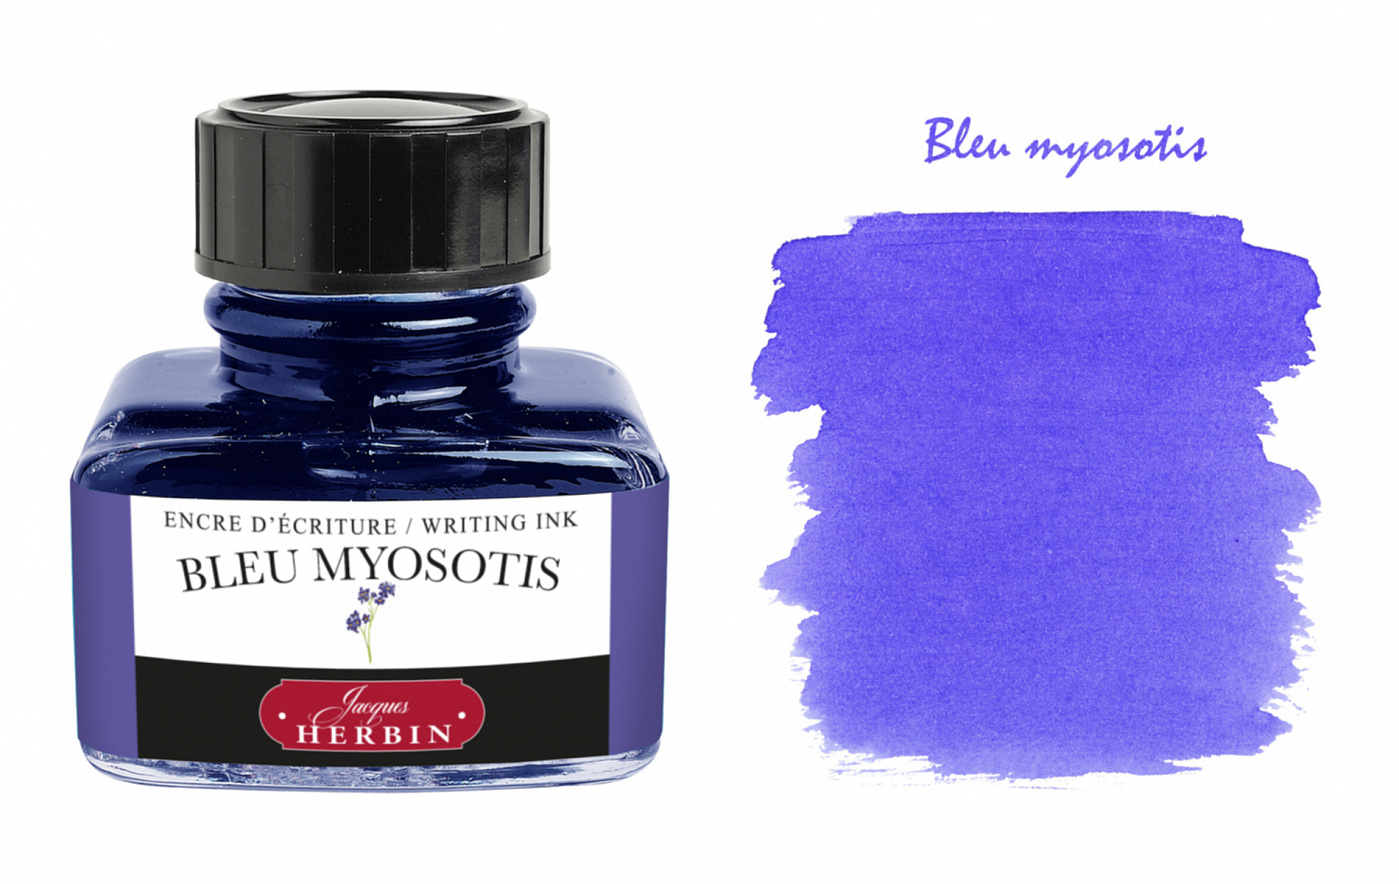 Чернила в банке Herbin, 30 мл, Bleu myosotis, Фиолетово-синий картриджи для перьевой ручки centropen синий 10 штук